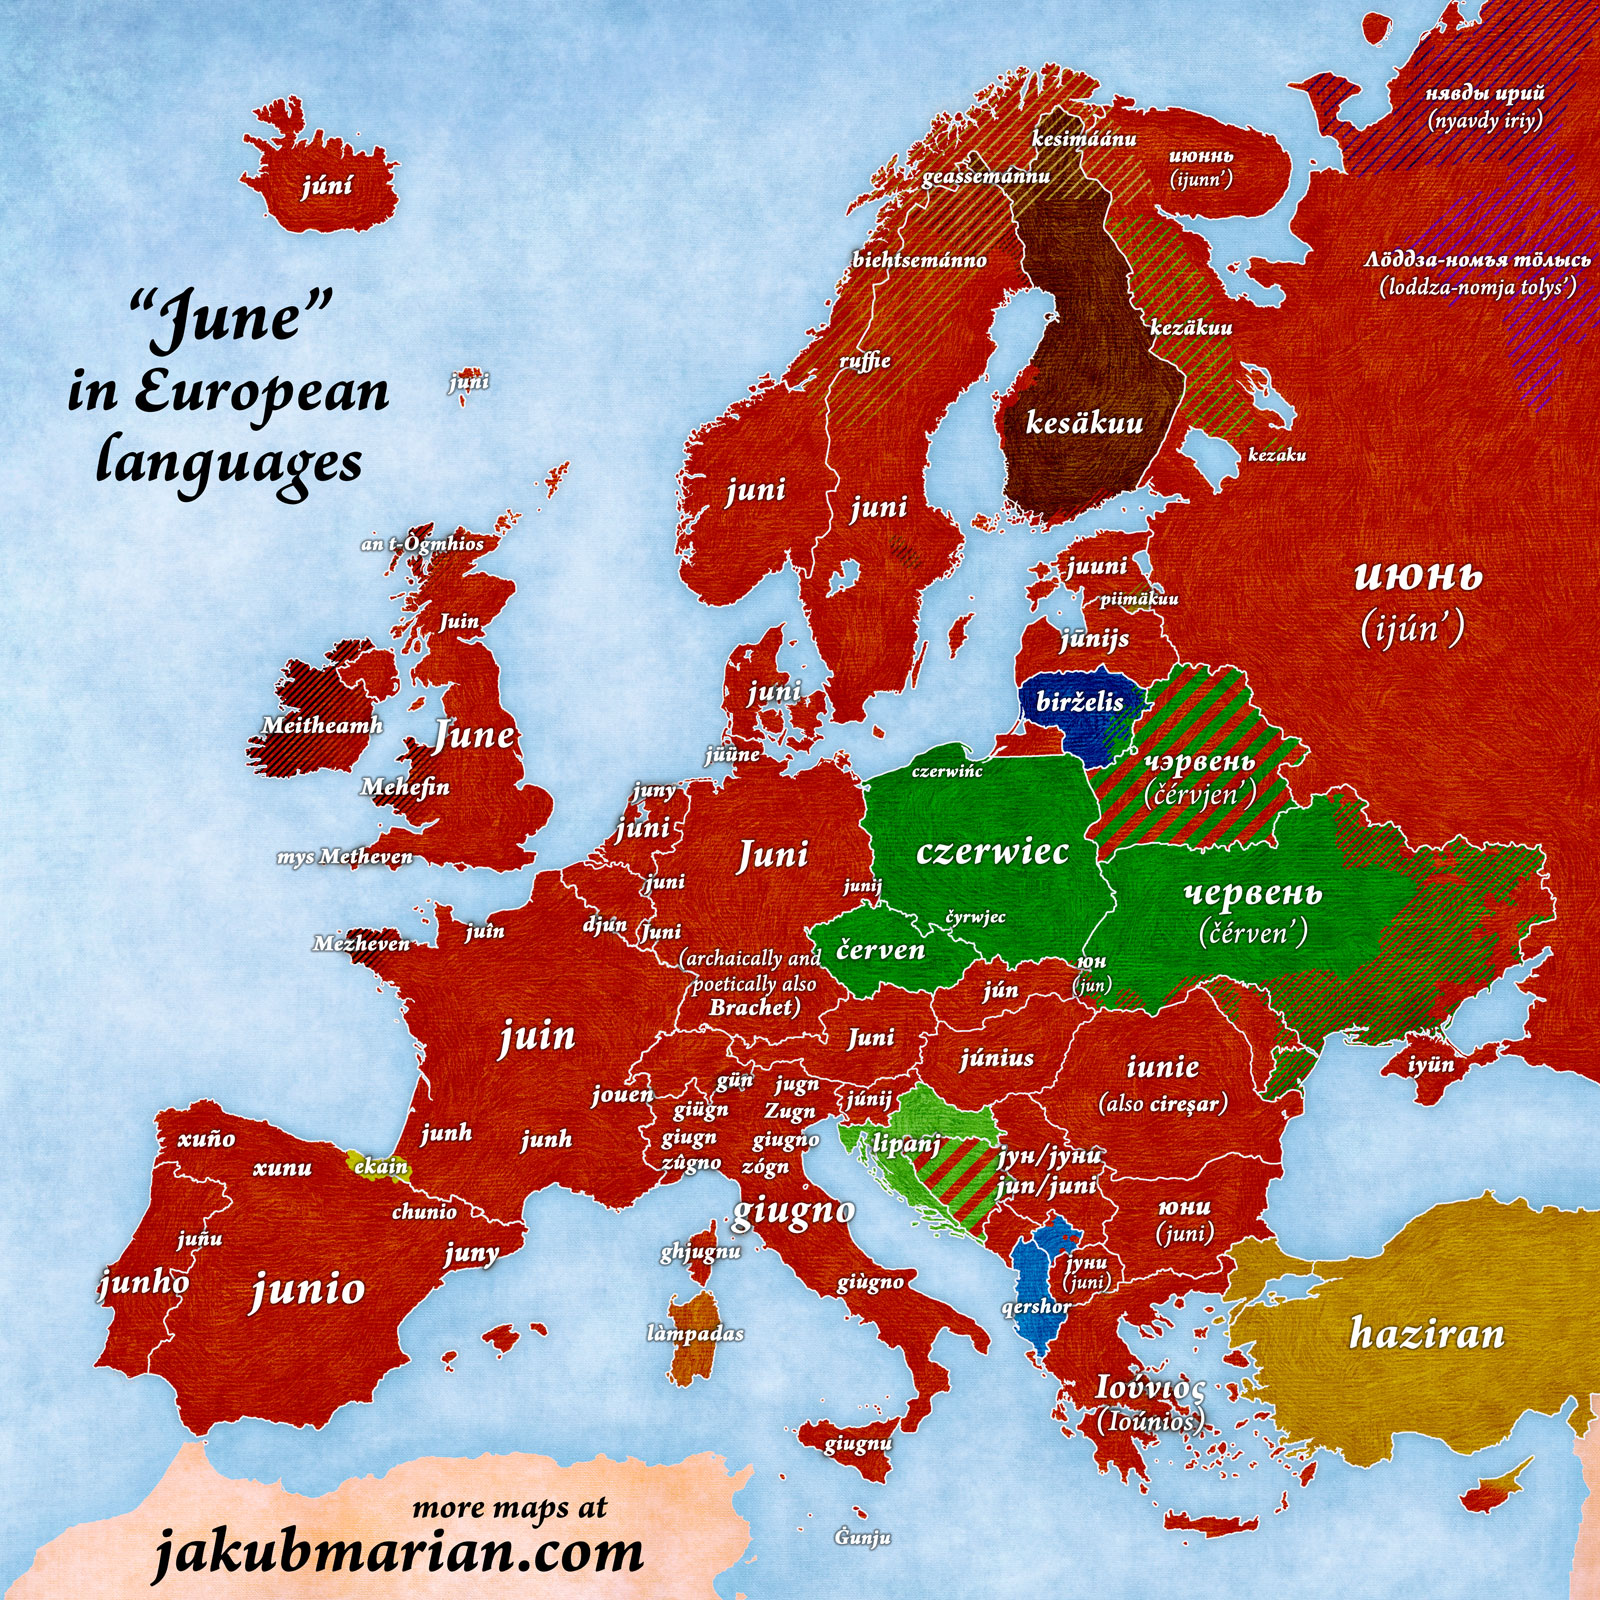 June in European Languages